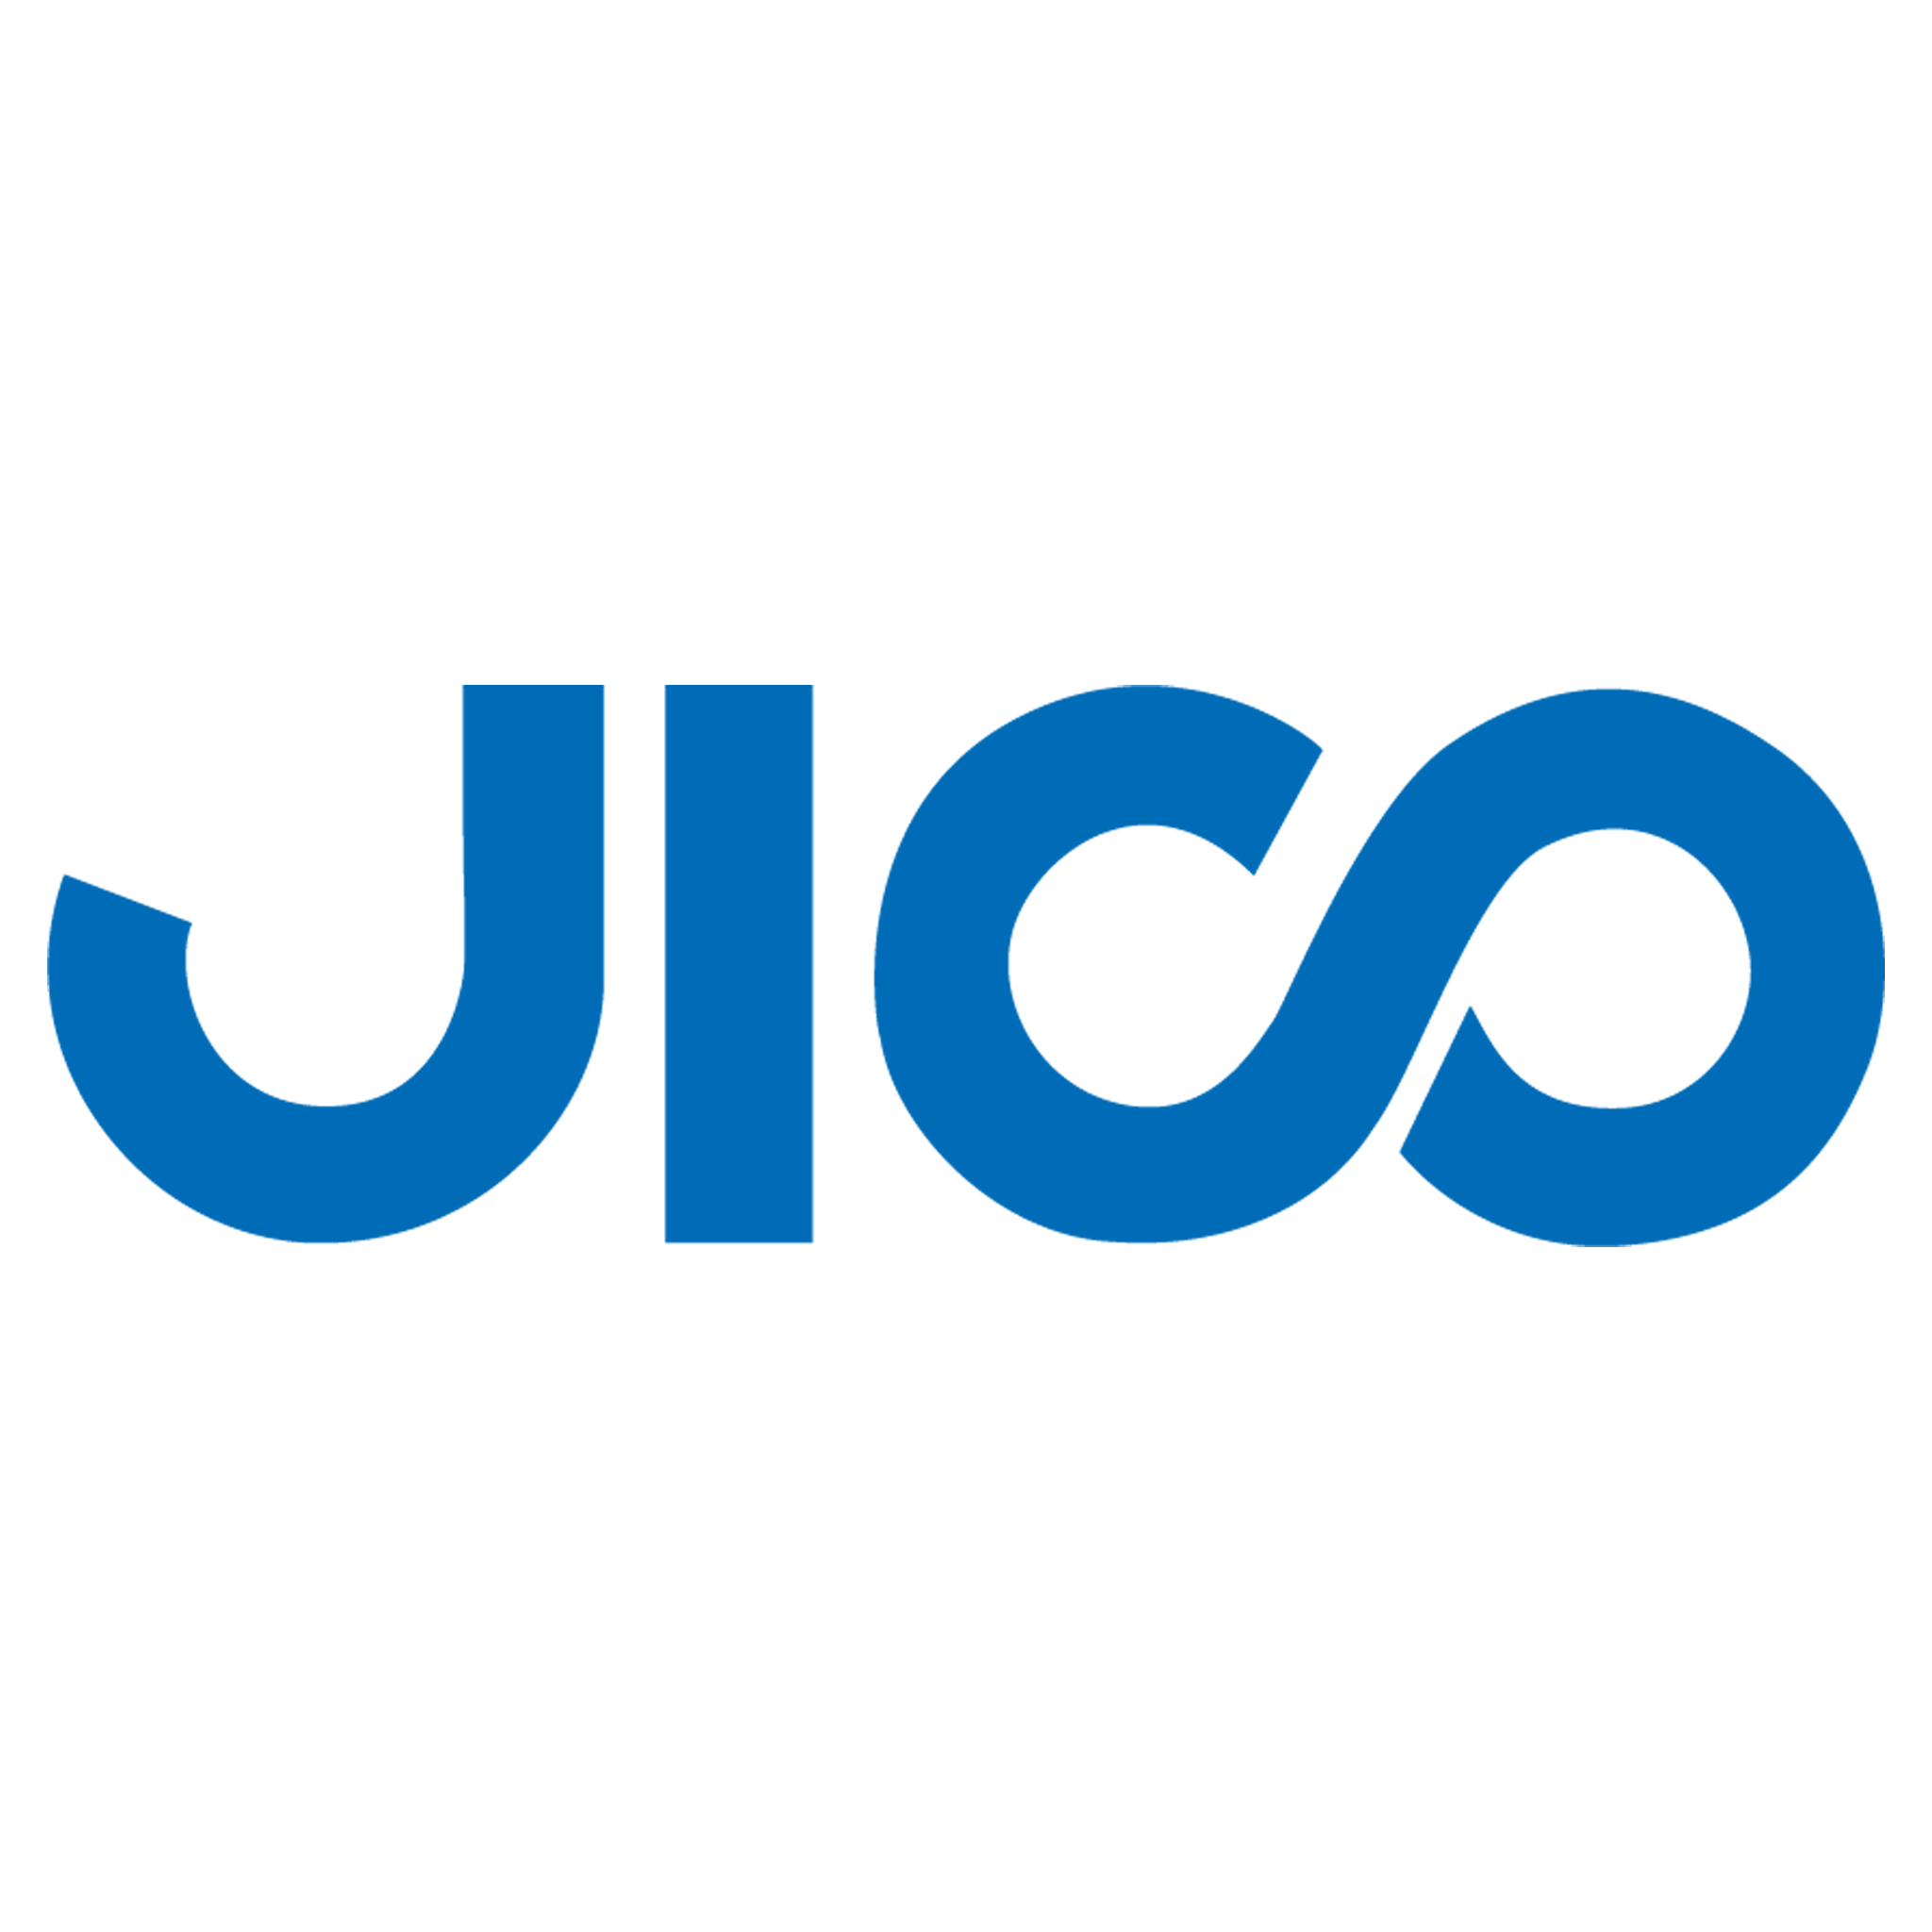 Jico